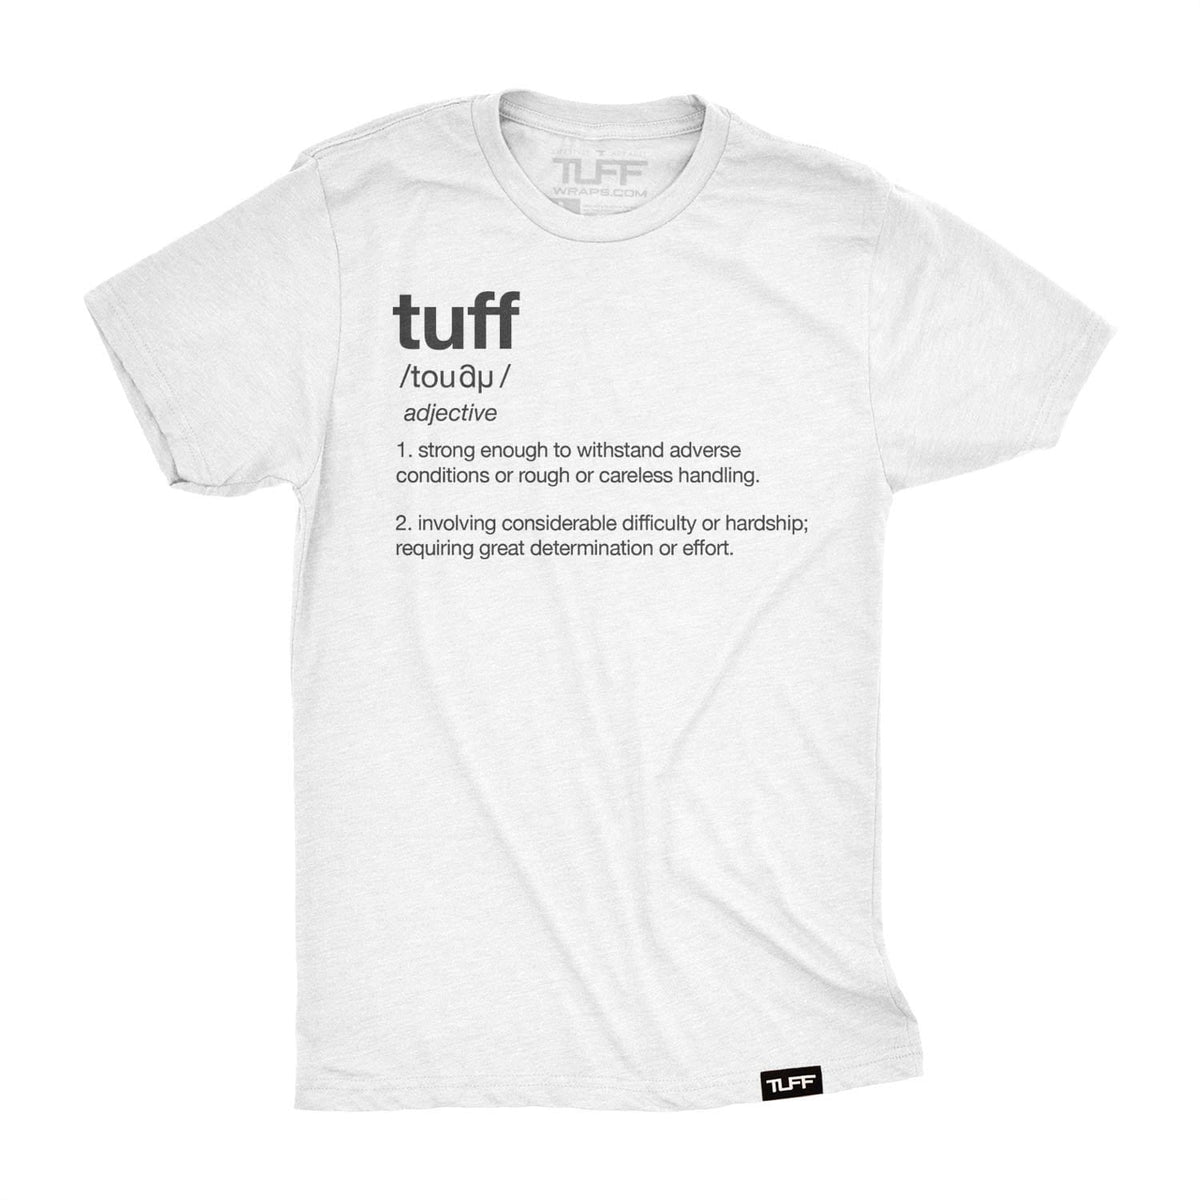 Tuff Definition Tee S / White TuffWraps.com